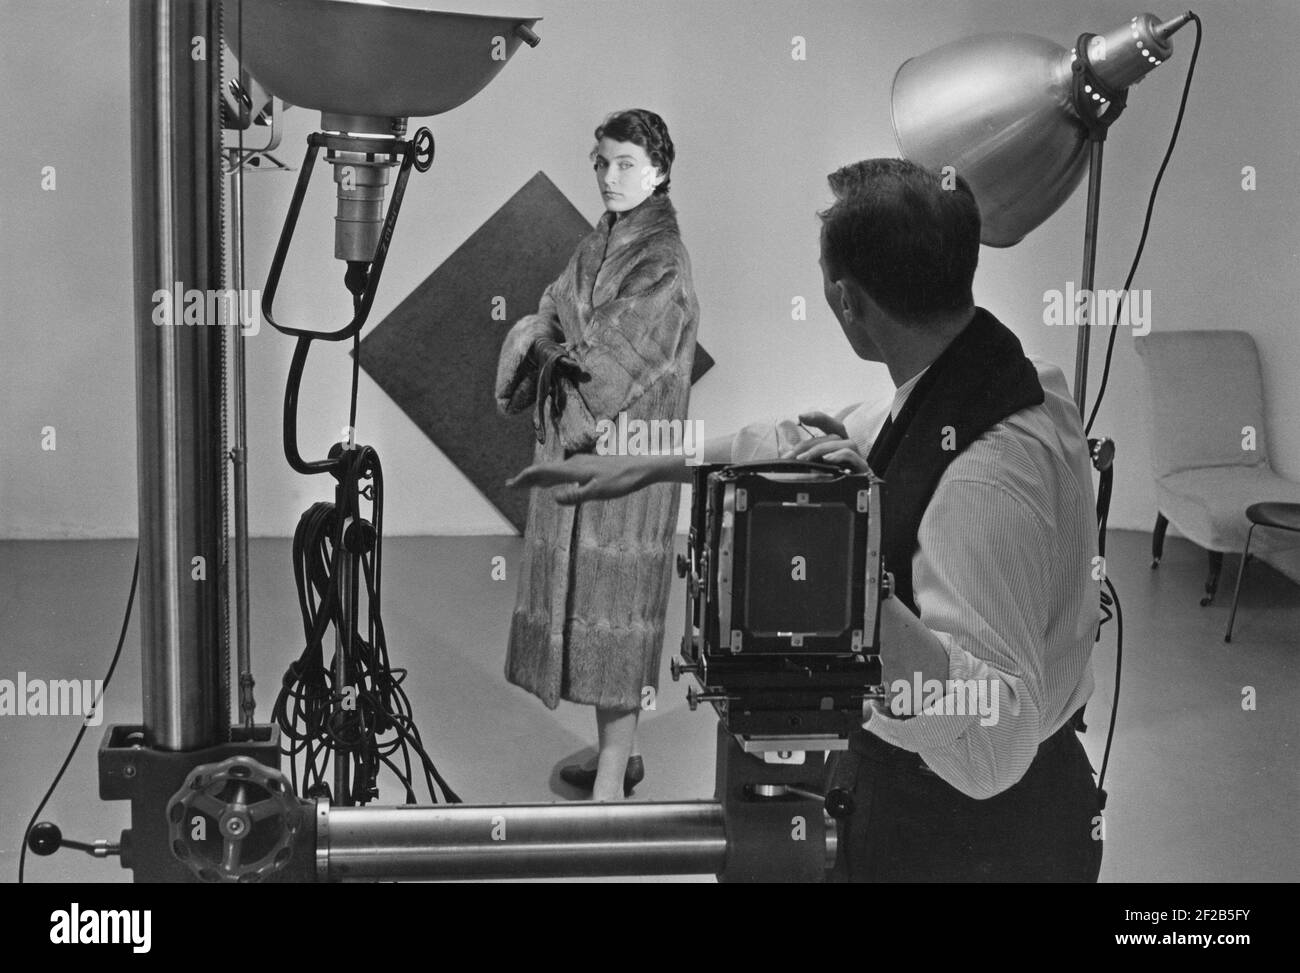 1950s Modefotograf und Model. Eine junge Frau ist mit dem 1950s modischen Pelzmantel verkleidet und wird vom Fotografen von der Kamera unterwiesen. Lichter und Hintergrund sind angeordnet. Schweden august 1957 Stockfoto